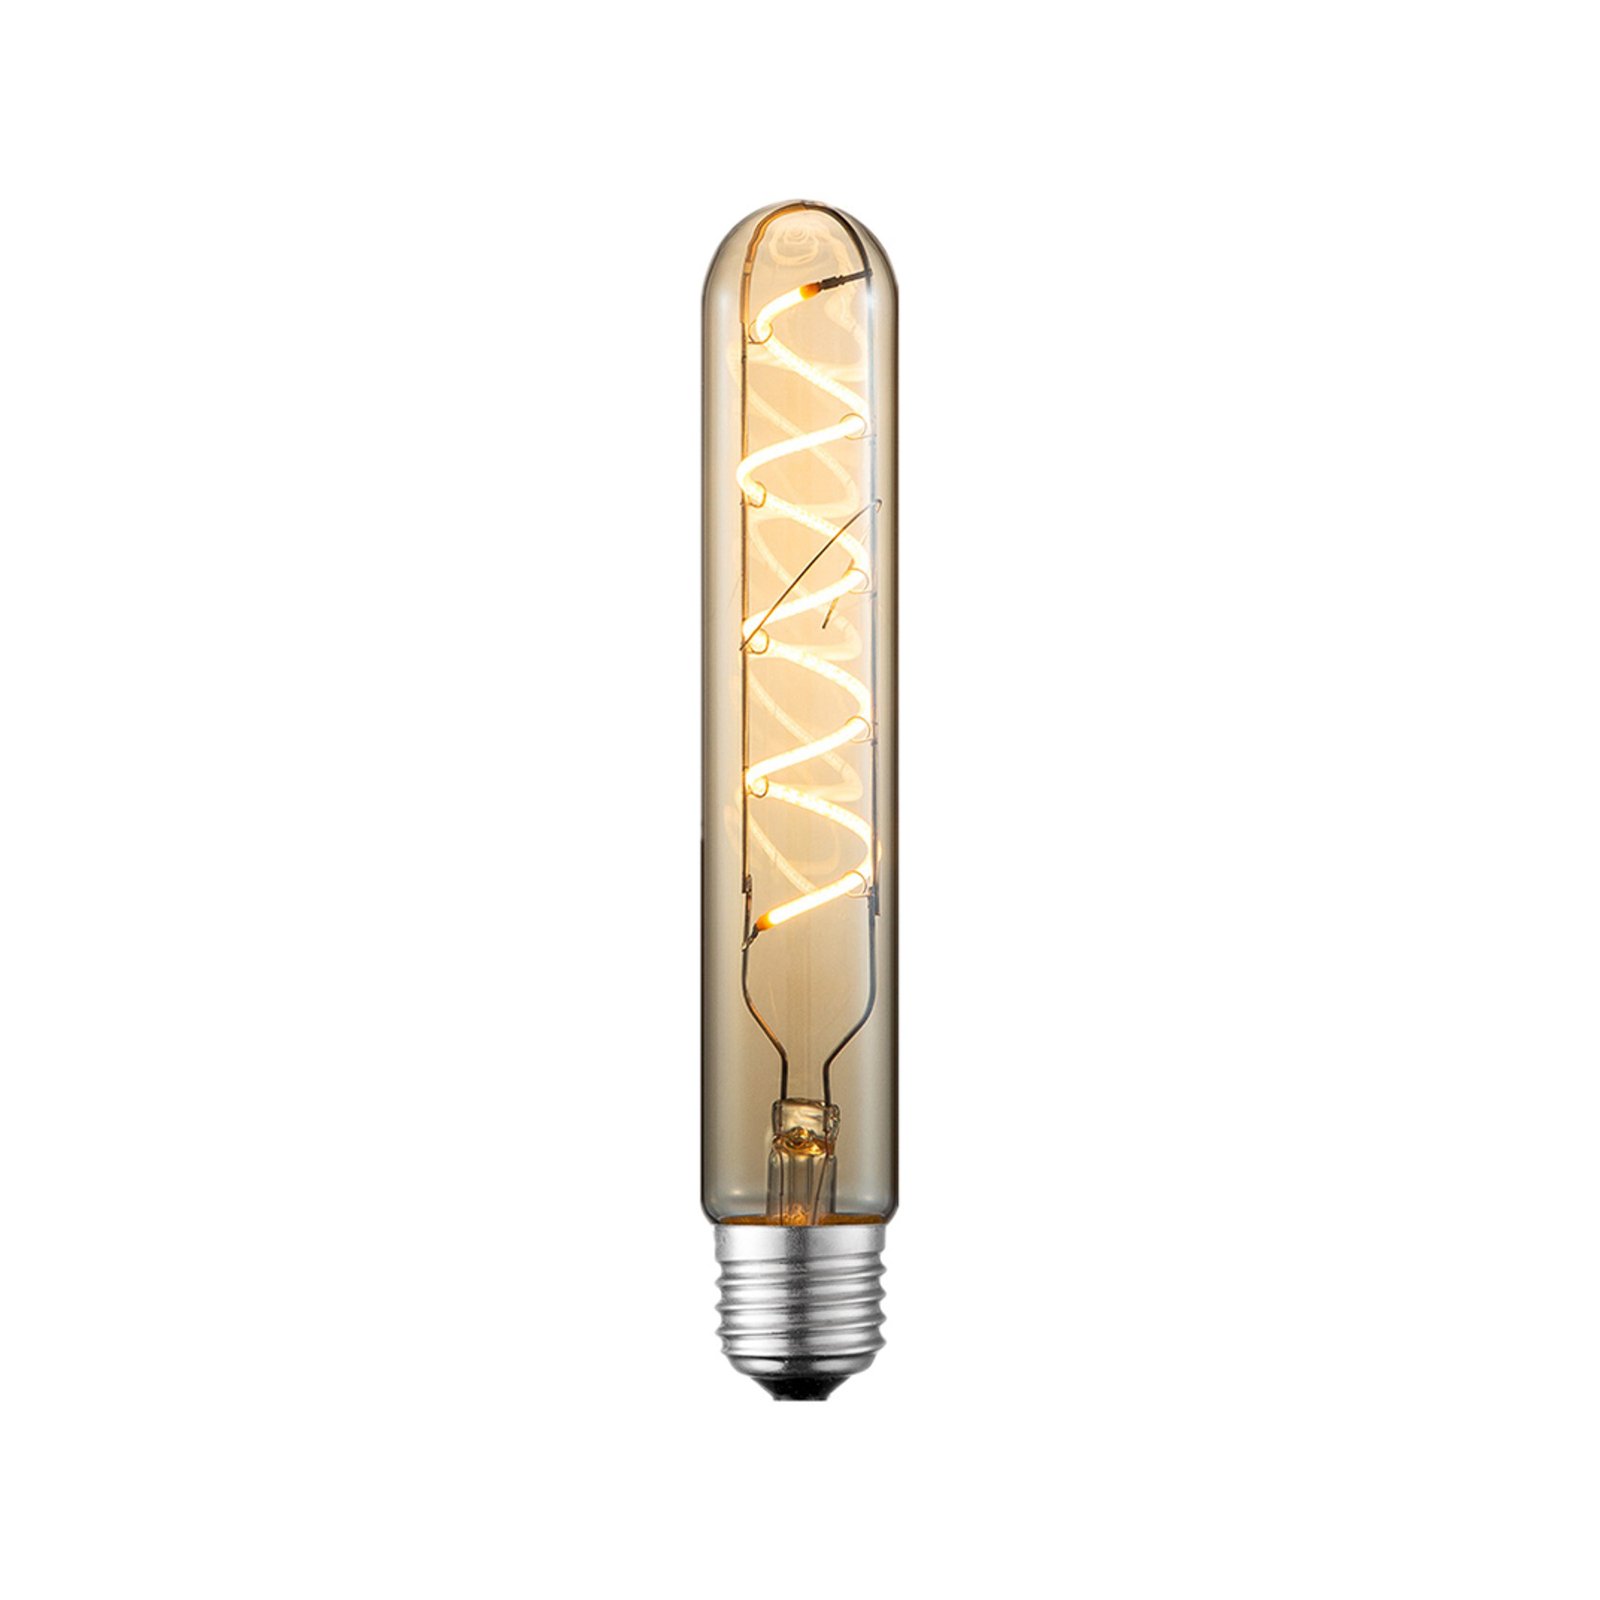 Lucande LED bulb E27 Ø 3cm 4 W 2,700 K amber